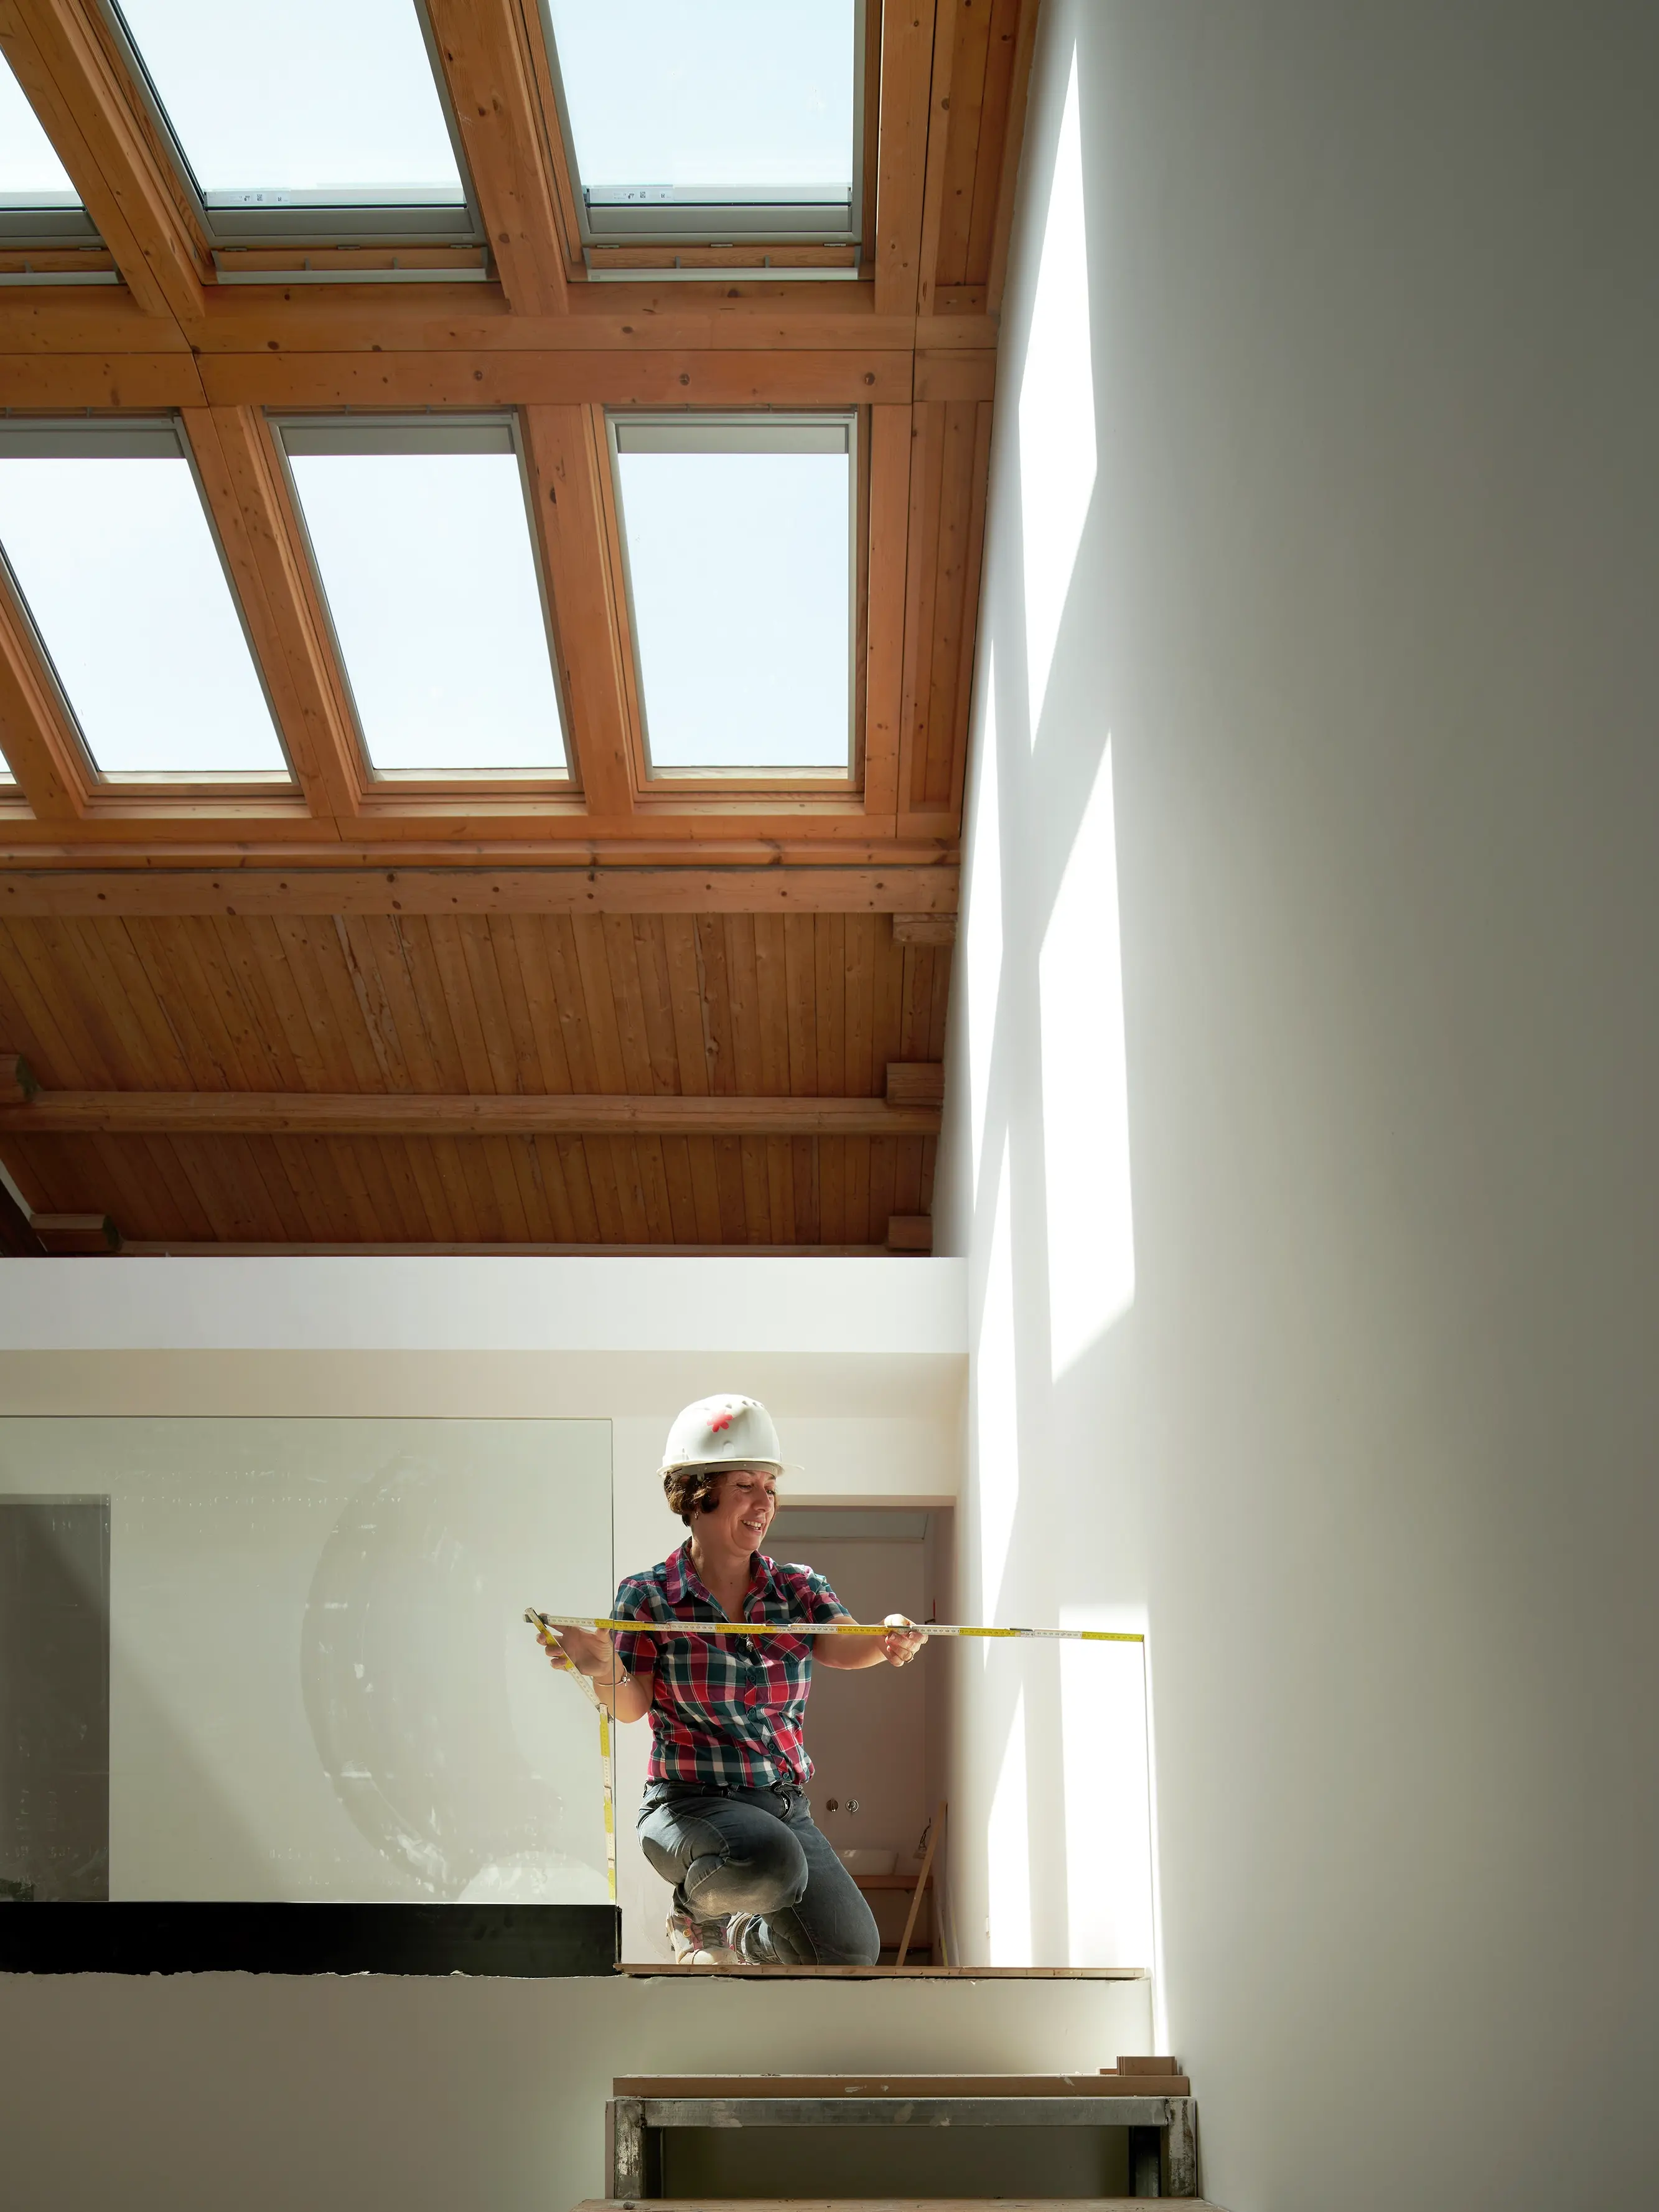 Persona che misura all'interno con luce naturale proveniente dalle finestre per tetti VELUX sopra.